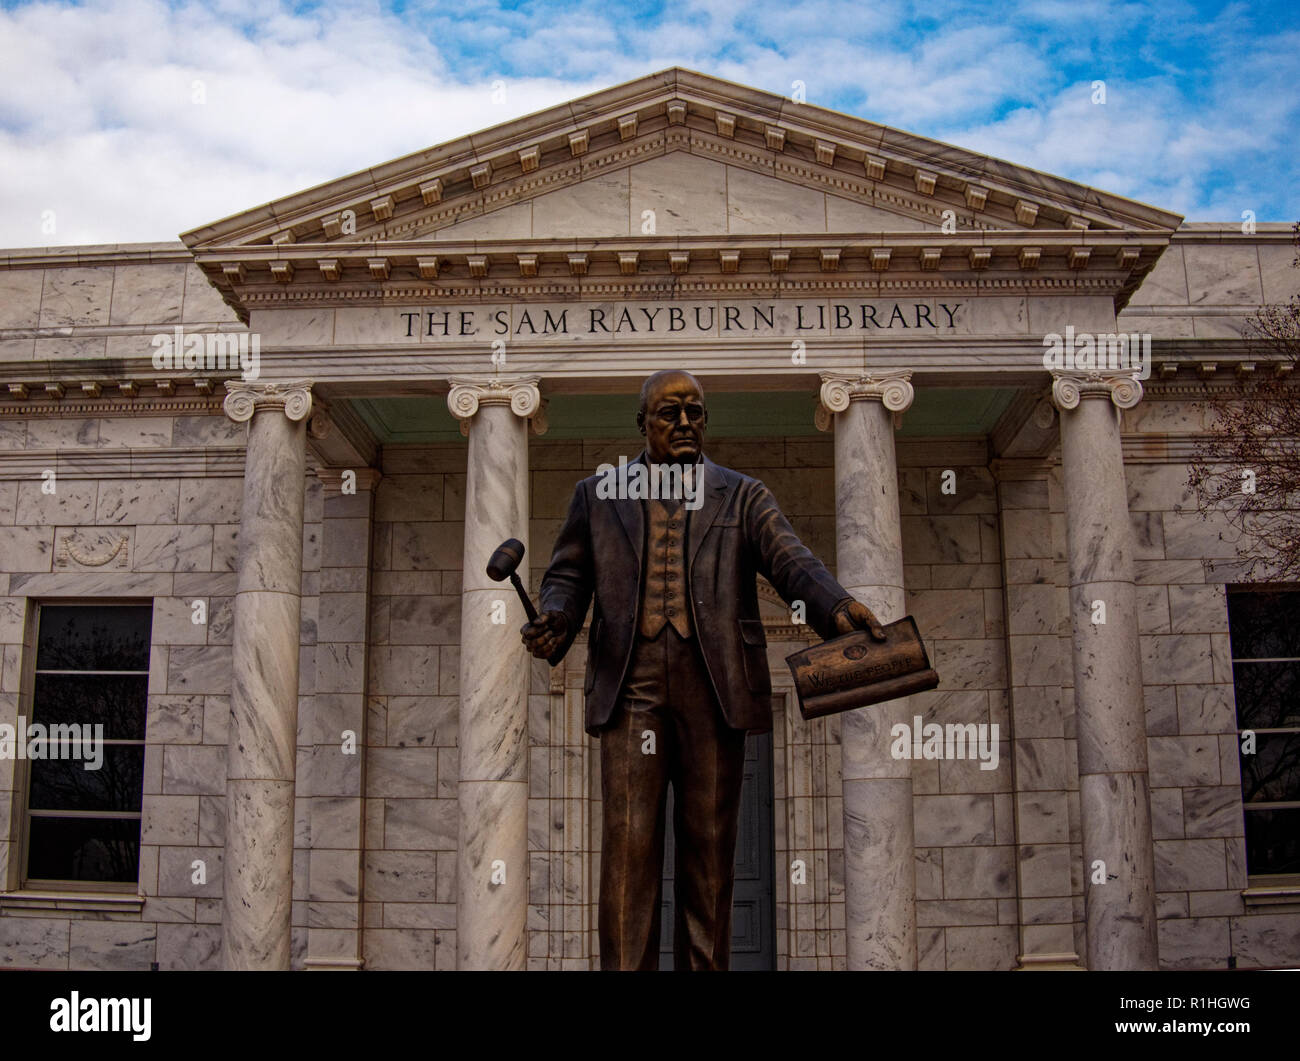 Una statua di altoparlante Sam Rayburn telai di fronte il suo memoriale in Bonham, Texas. Egli ha guidato il più importante legislazione nel XX secolo attraverso il Congresso. Foto Stock